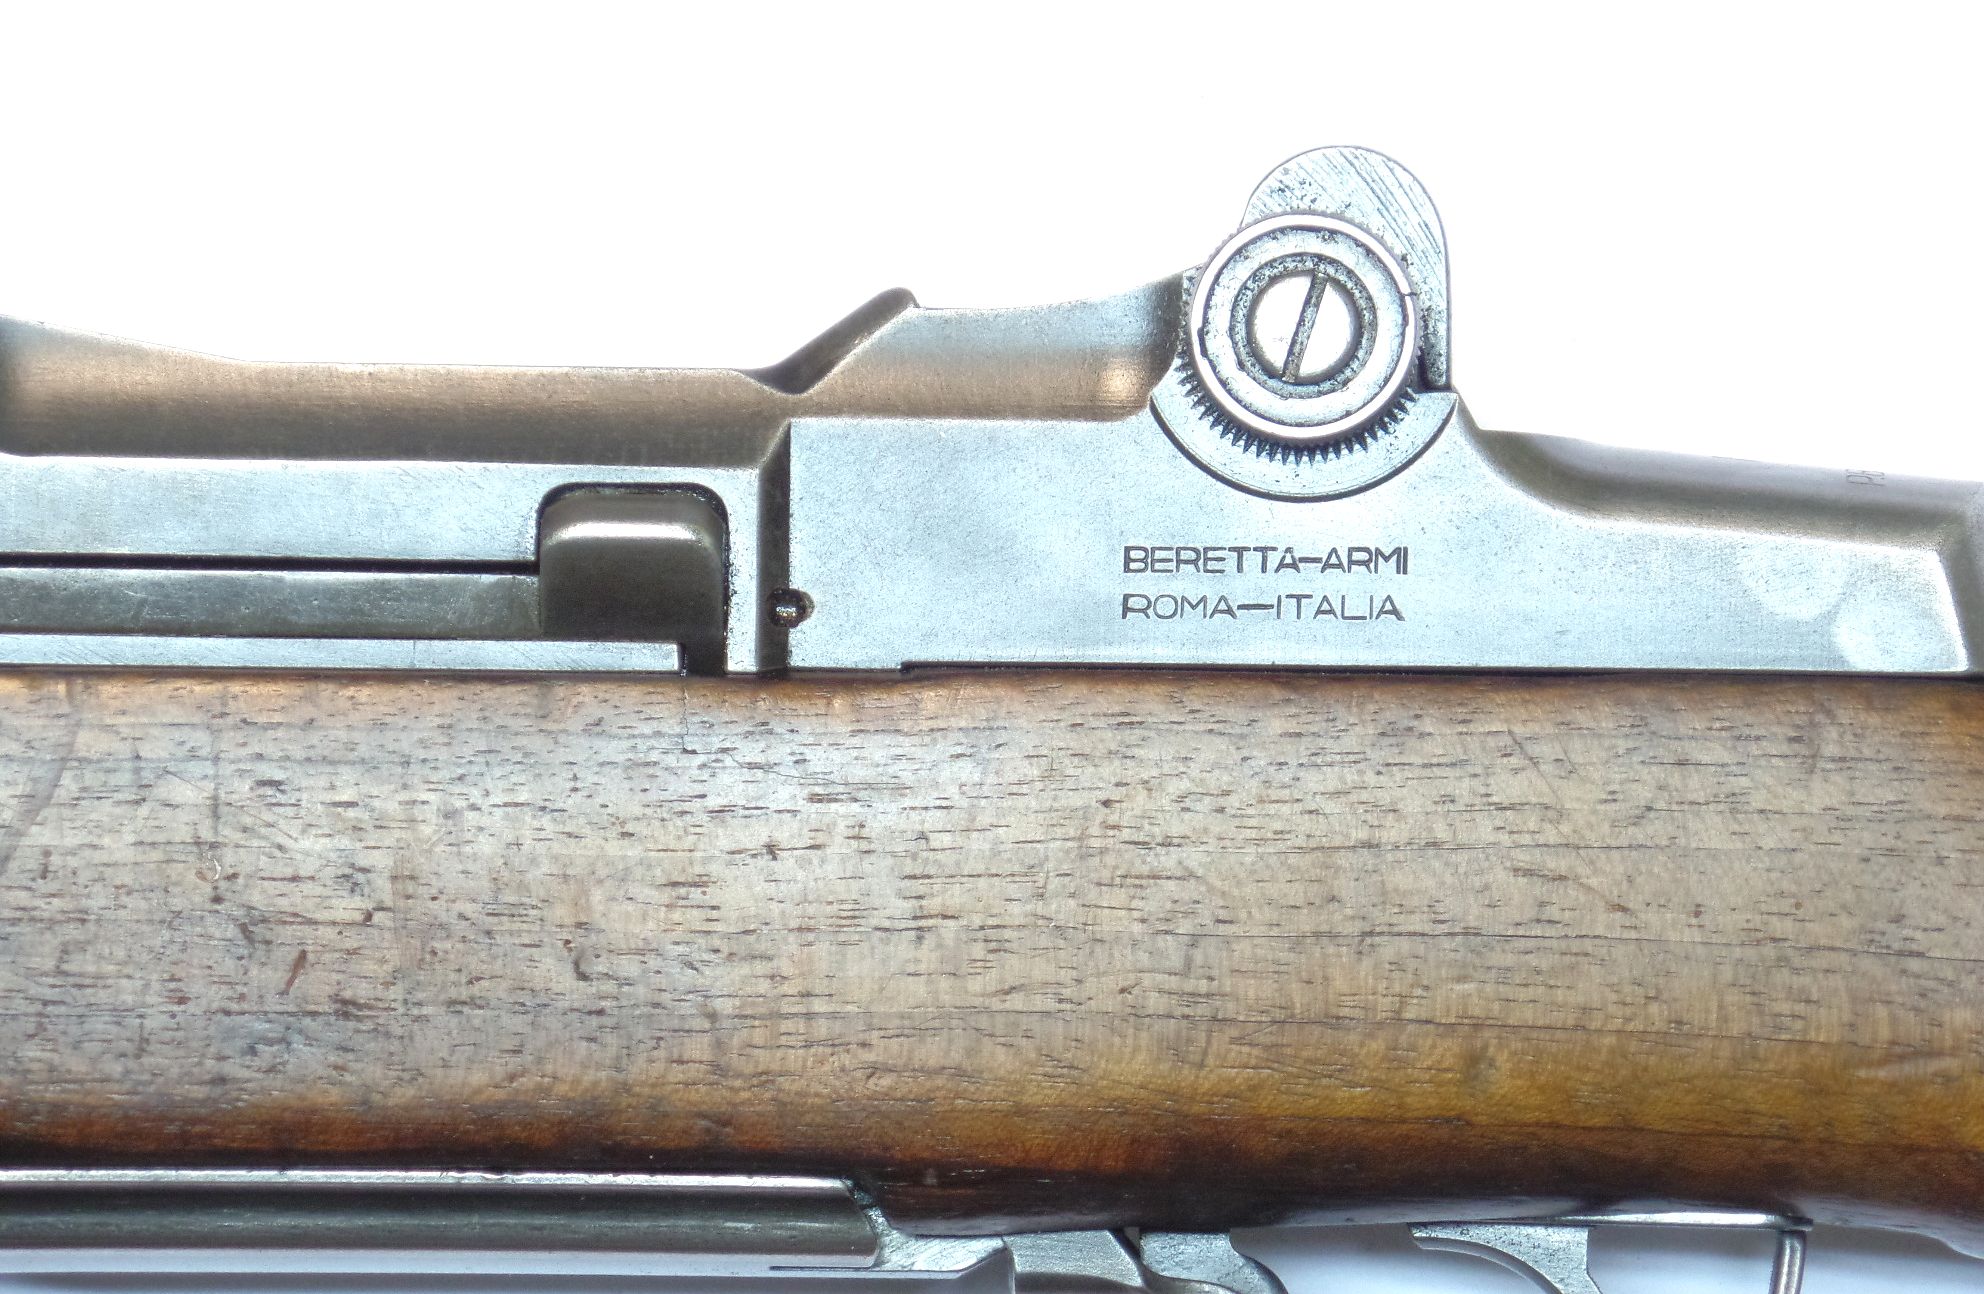 GARAND BERETTA M1 calibre 30-06